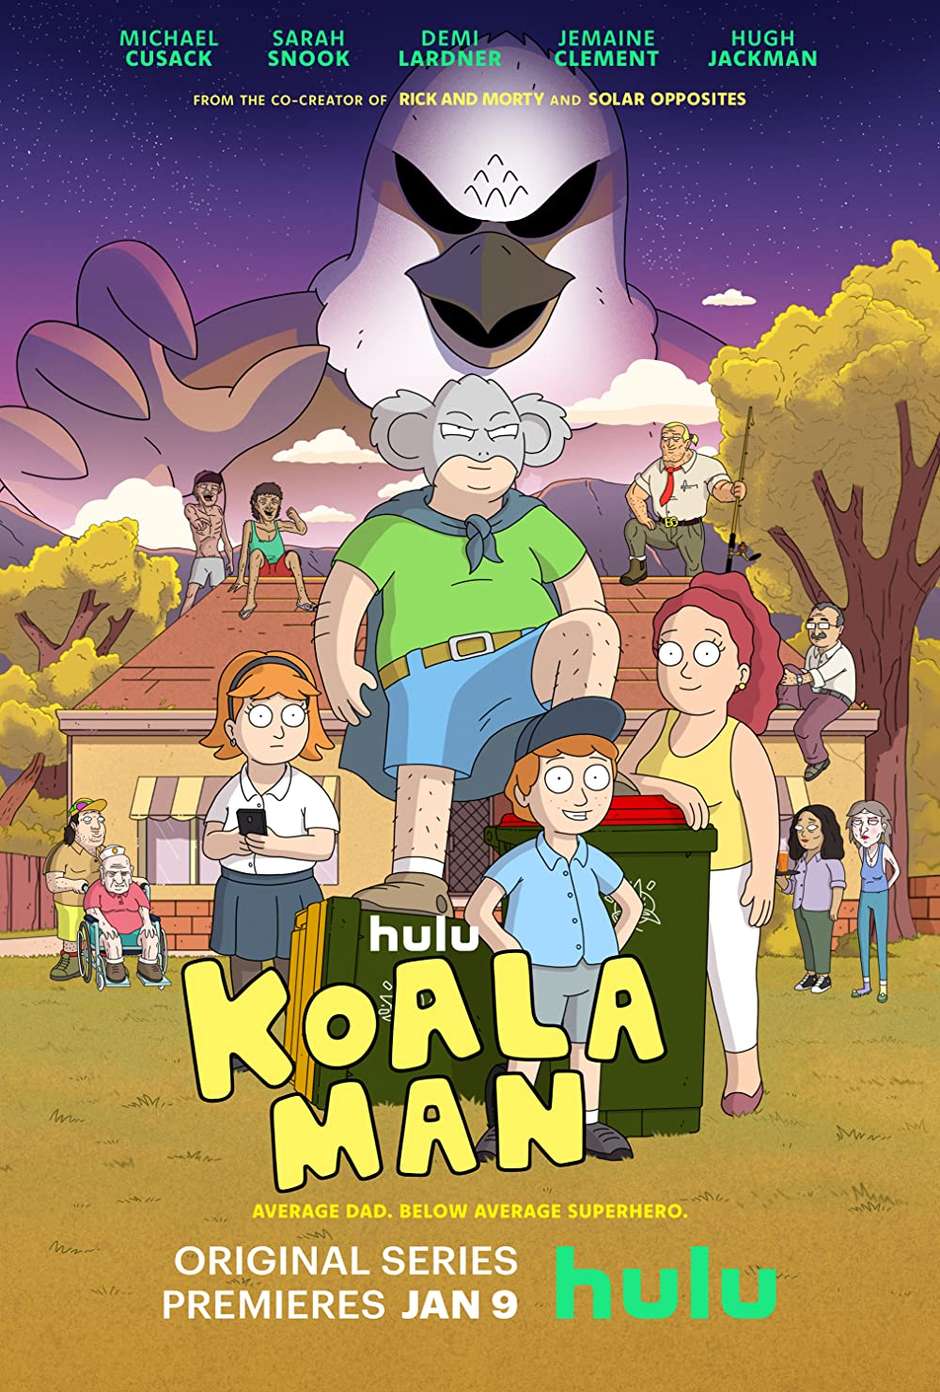 Koala Man: Animação dublada por Hugh Jackman ganha primeiro